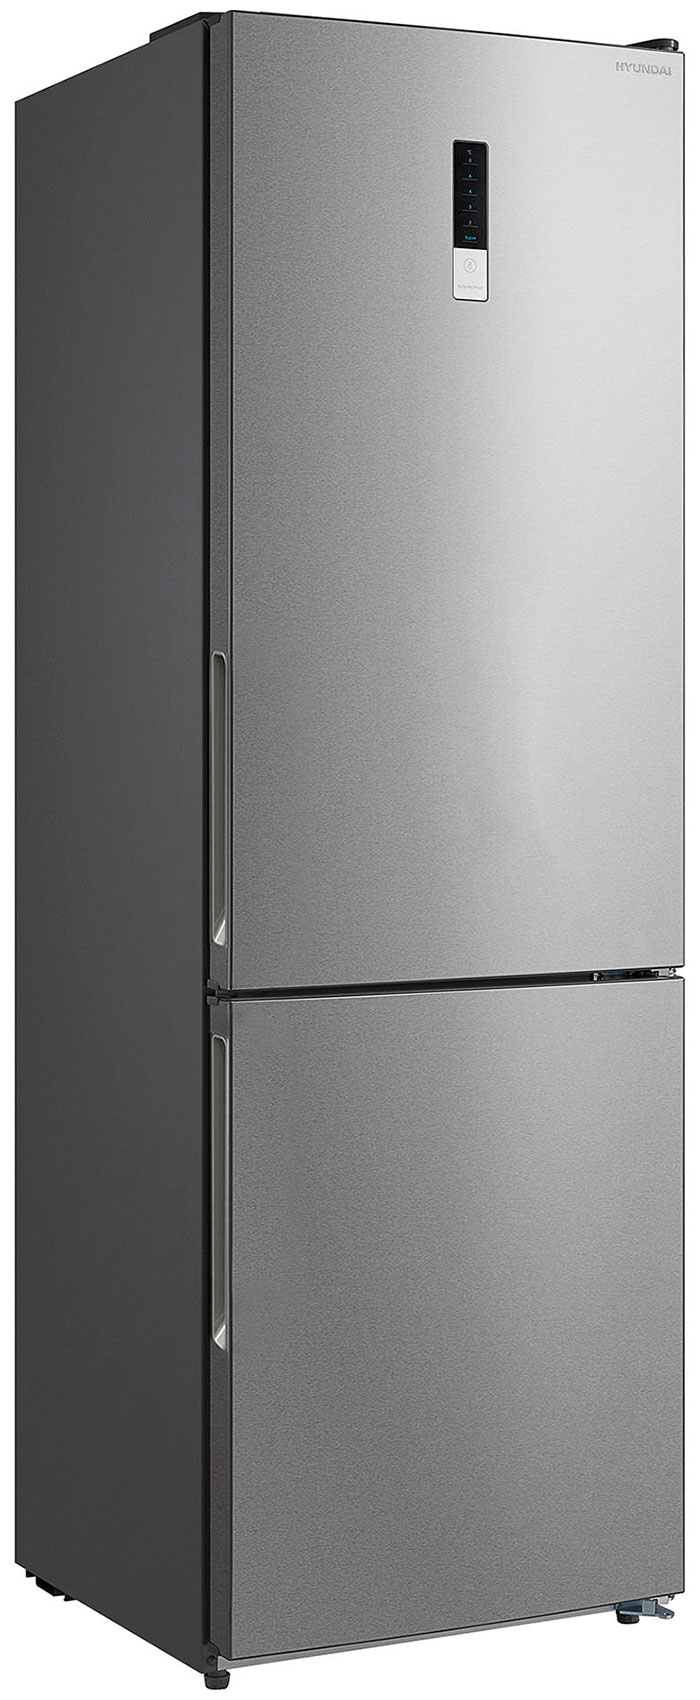 Двухкамерный холодильник Hyundai CC3595FIX нержавеющая сталь двухкамерный холодильник hyundai cc3593fwt белый